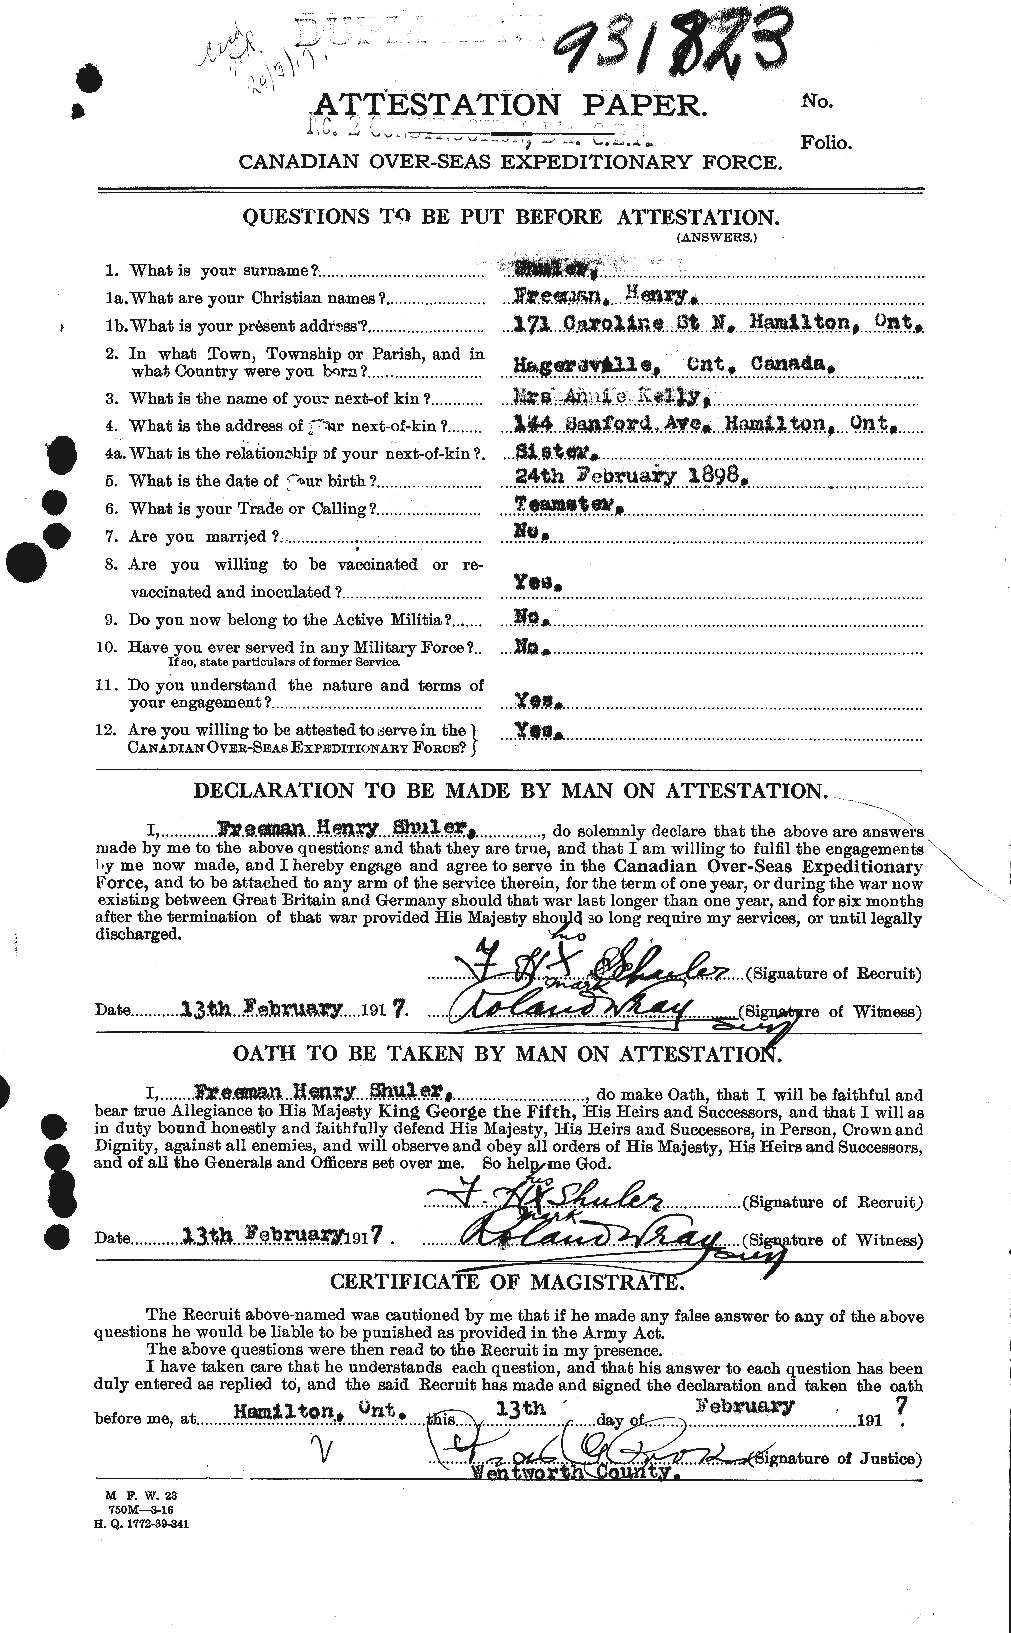 Dossiers du Personnel de la Première Guerre mondiale - CEC 097293a